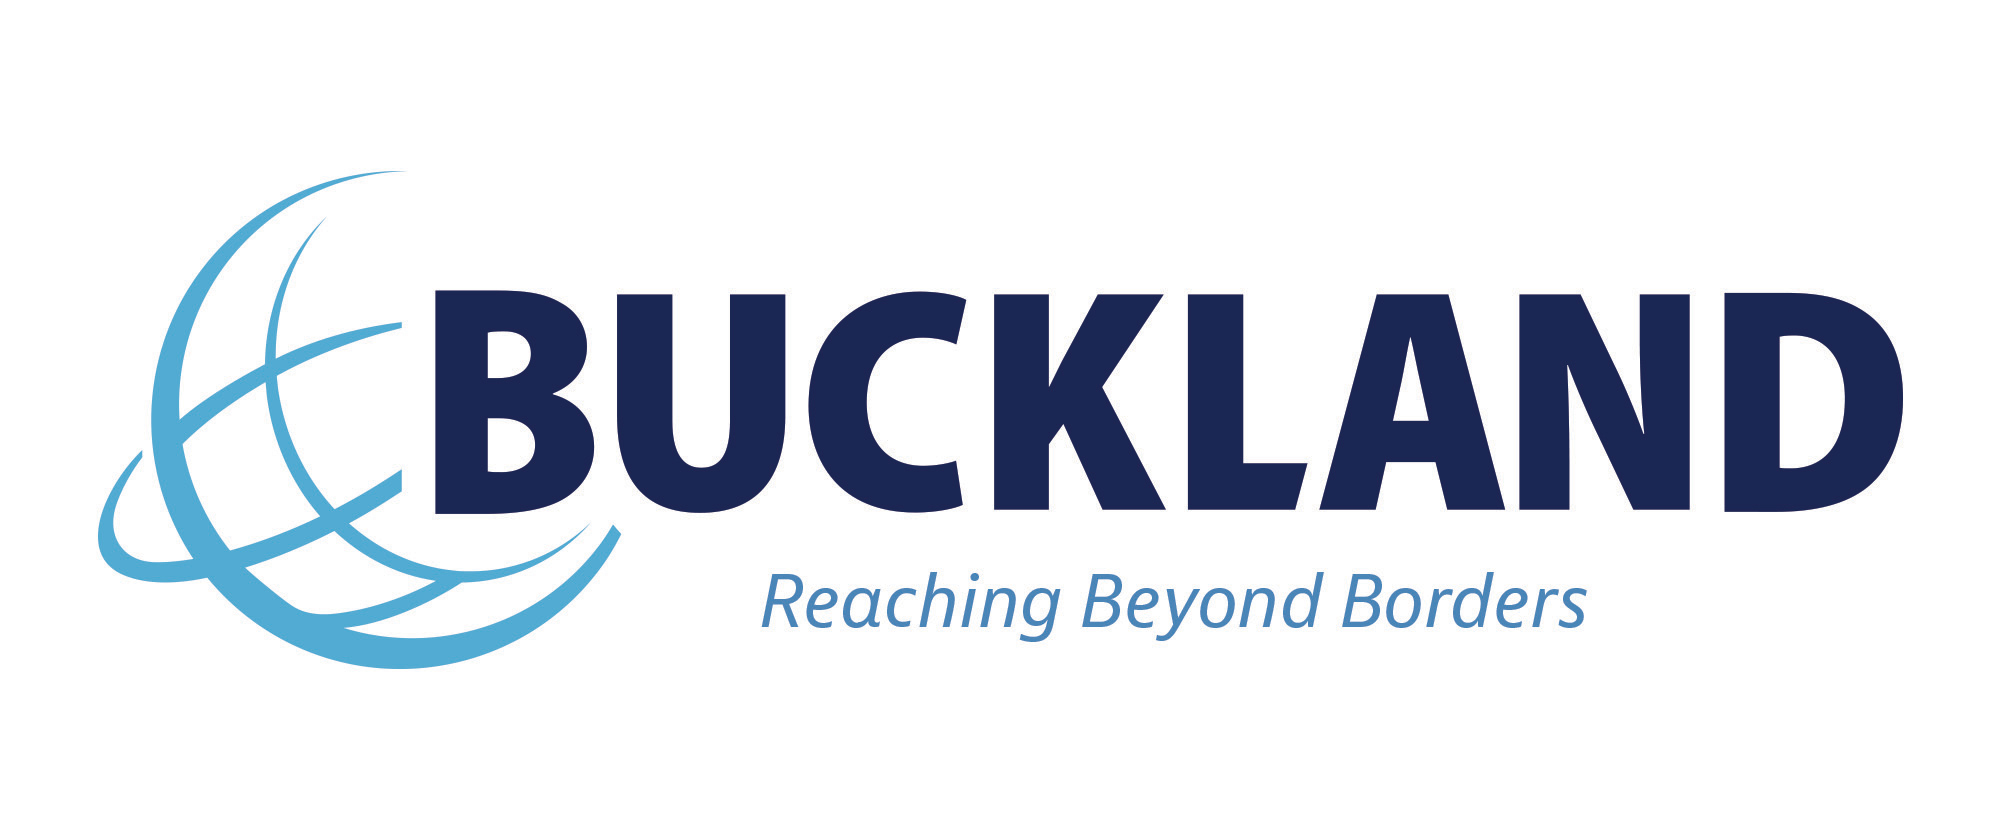  Buckland Customs Brokers  